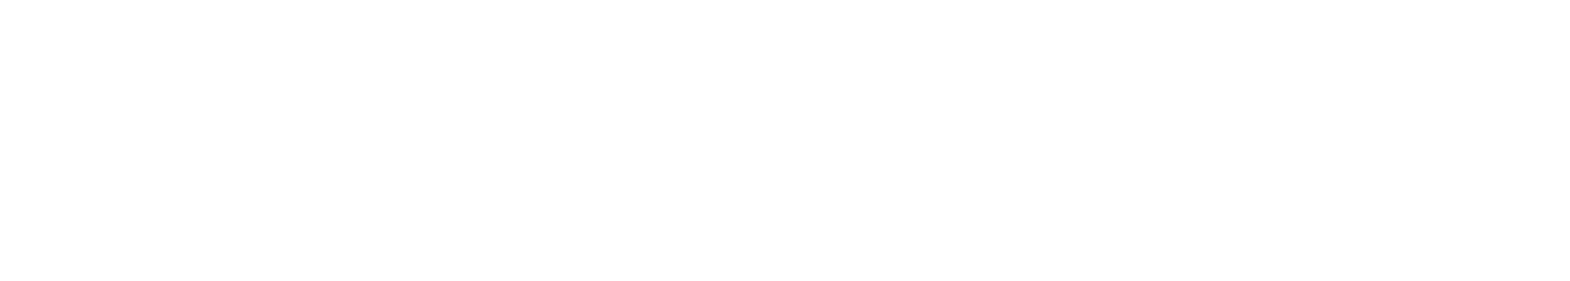 Enphase Energy
 Logo groß für dunkle Hintergründe (transparentes PNG)